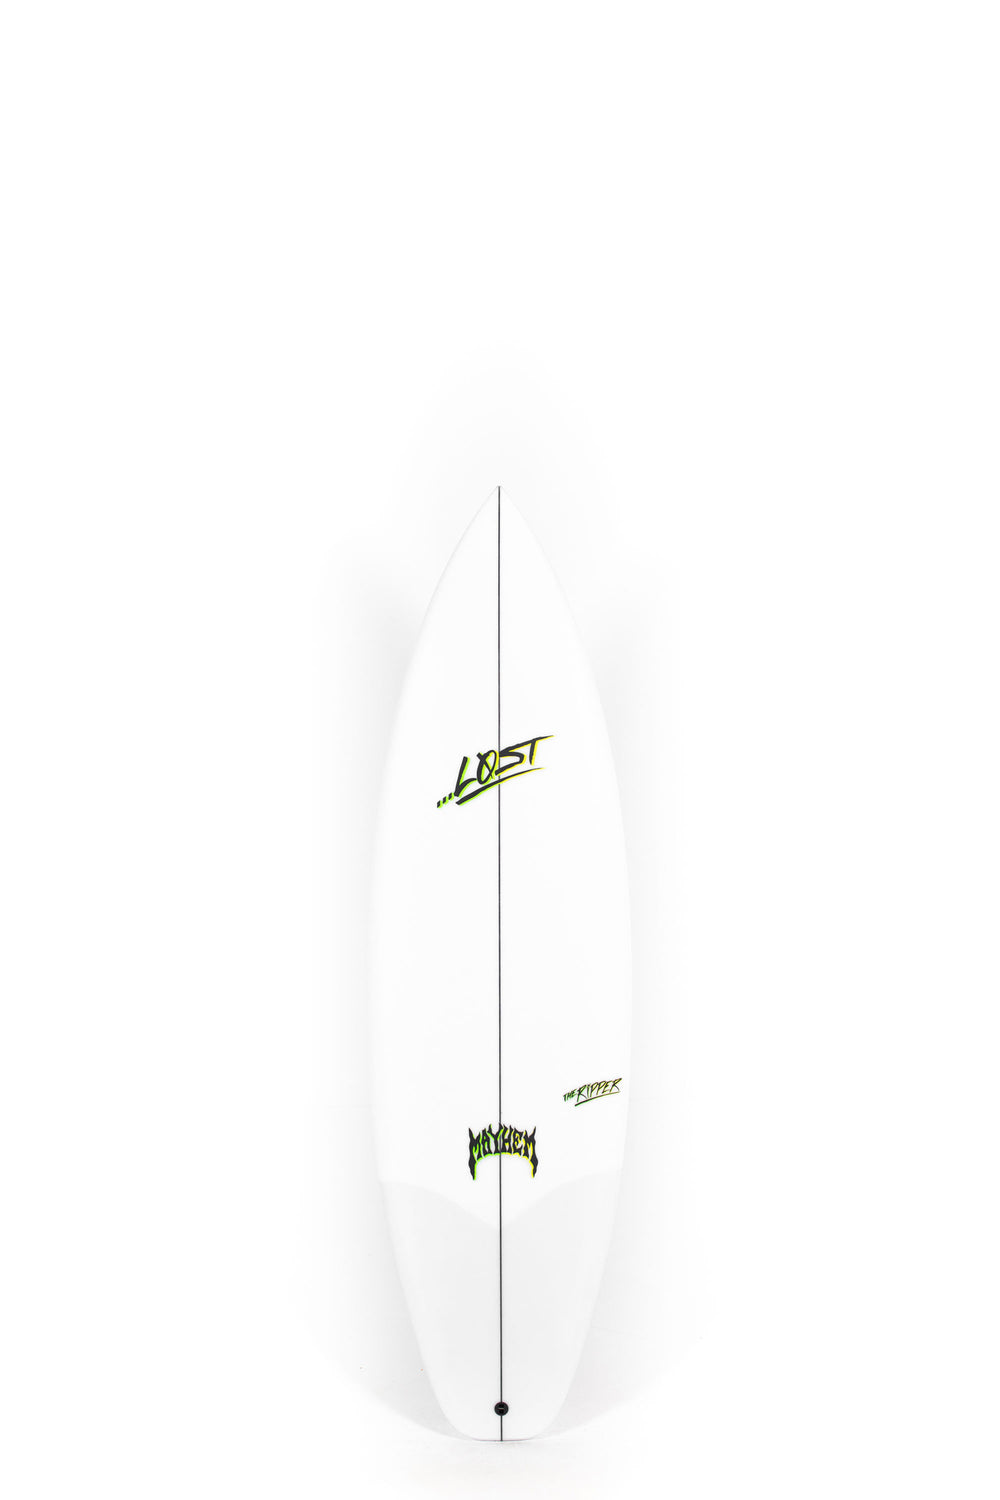 Pukas Surf Shop - Lost Surfboard - THE RIPPER by Matt Biolos - 6'0